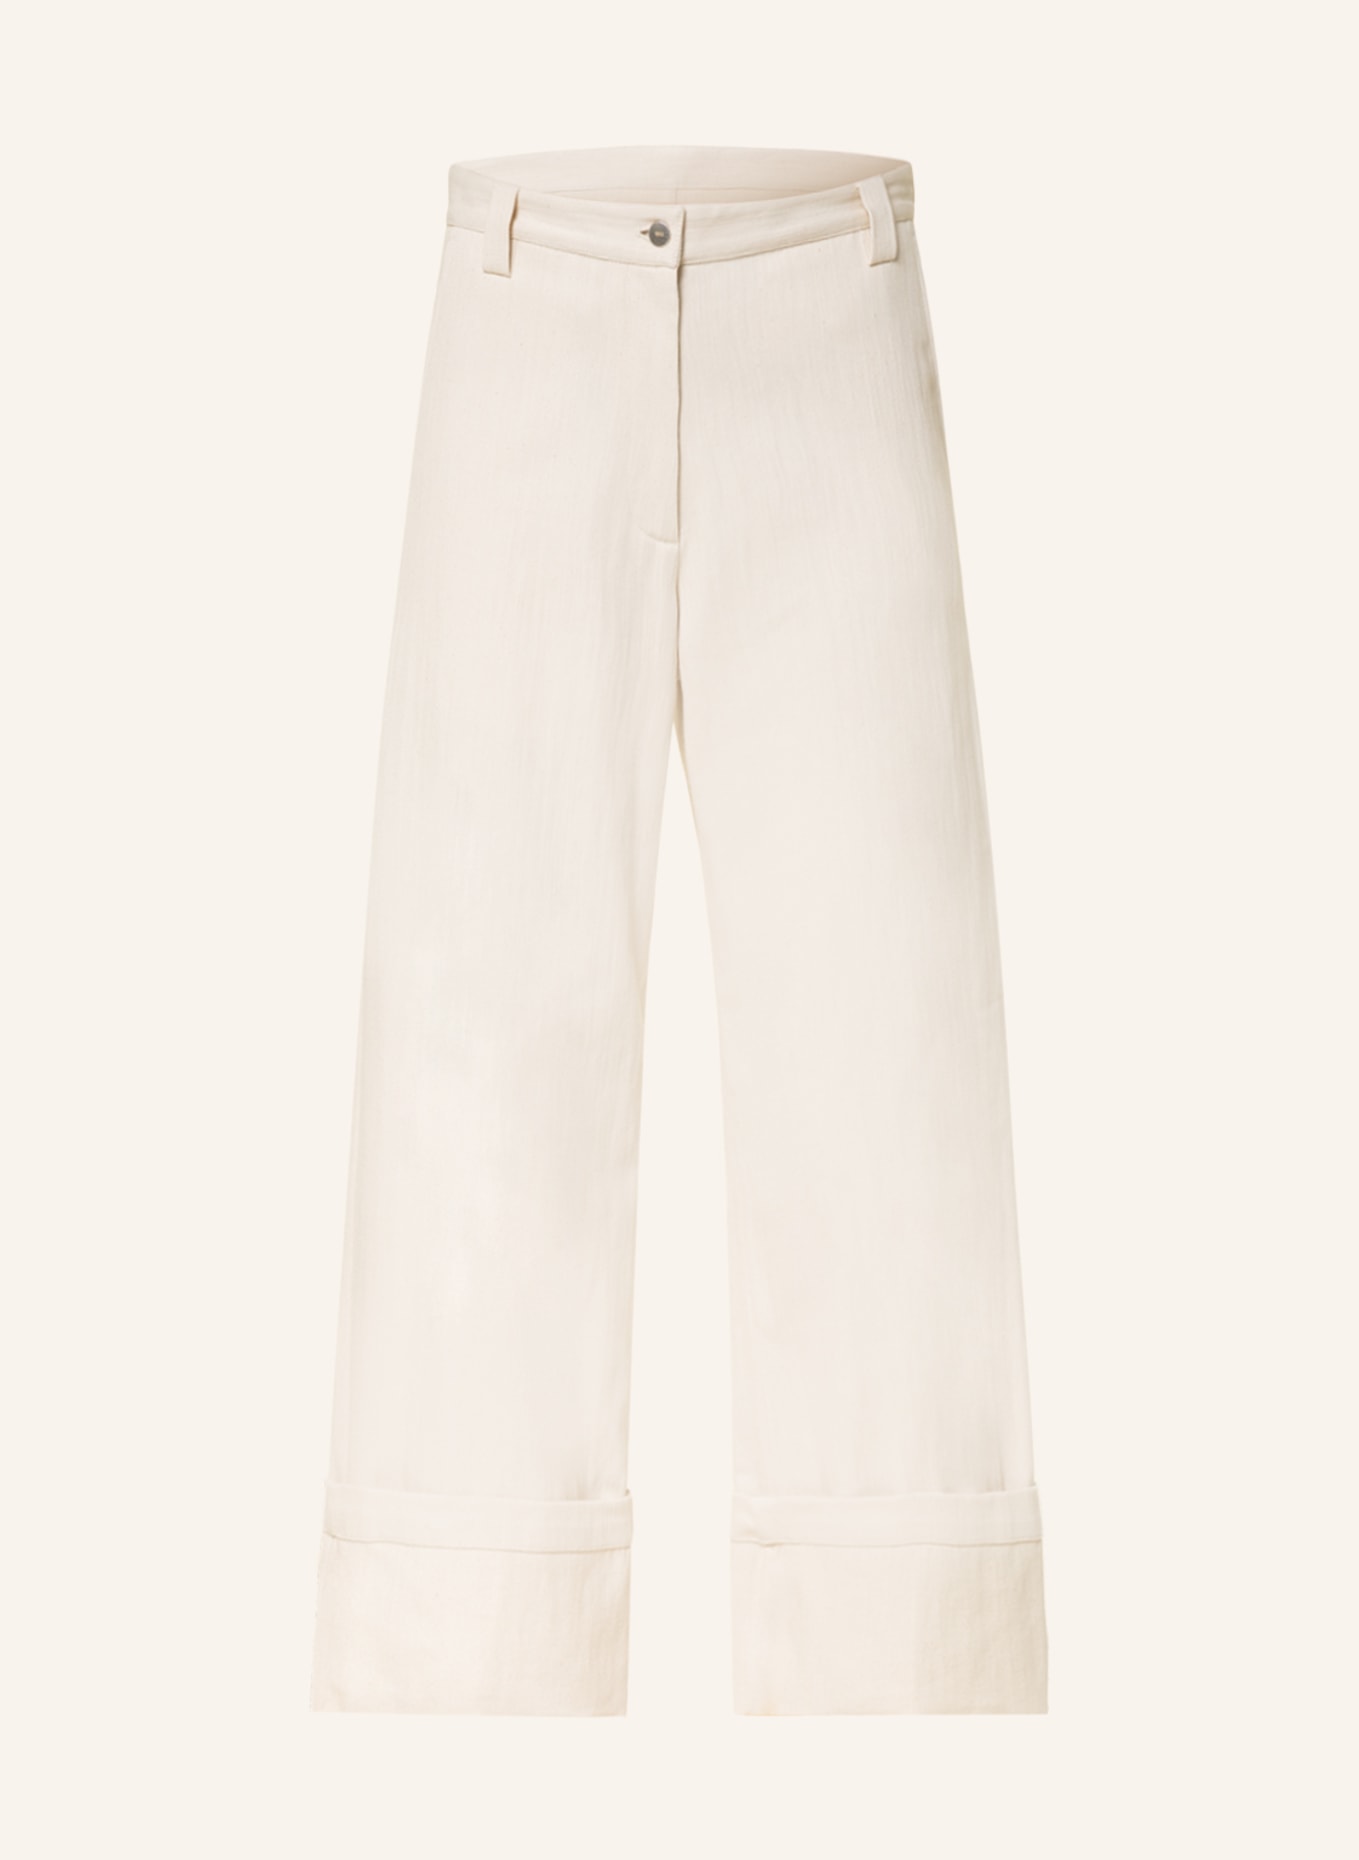 MONCLER GENIUS Culotte jeans, Color: 070 (Image 1)